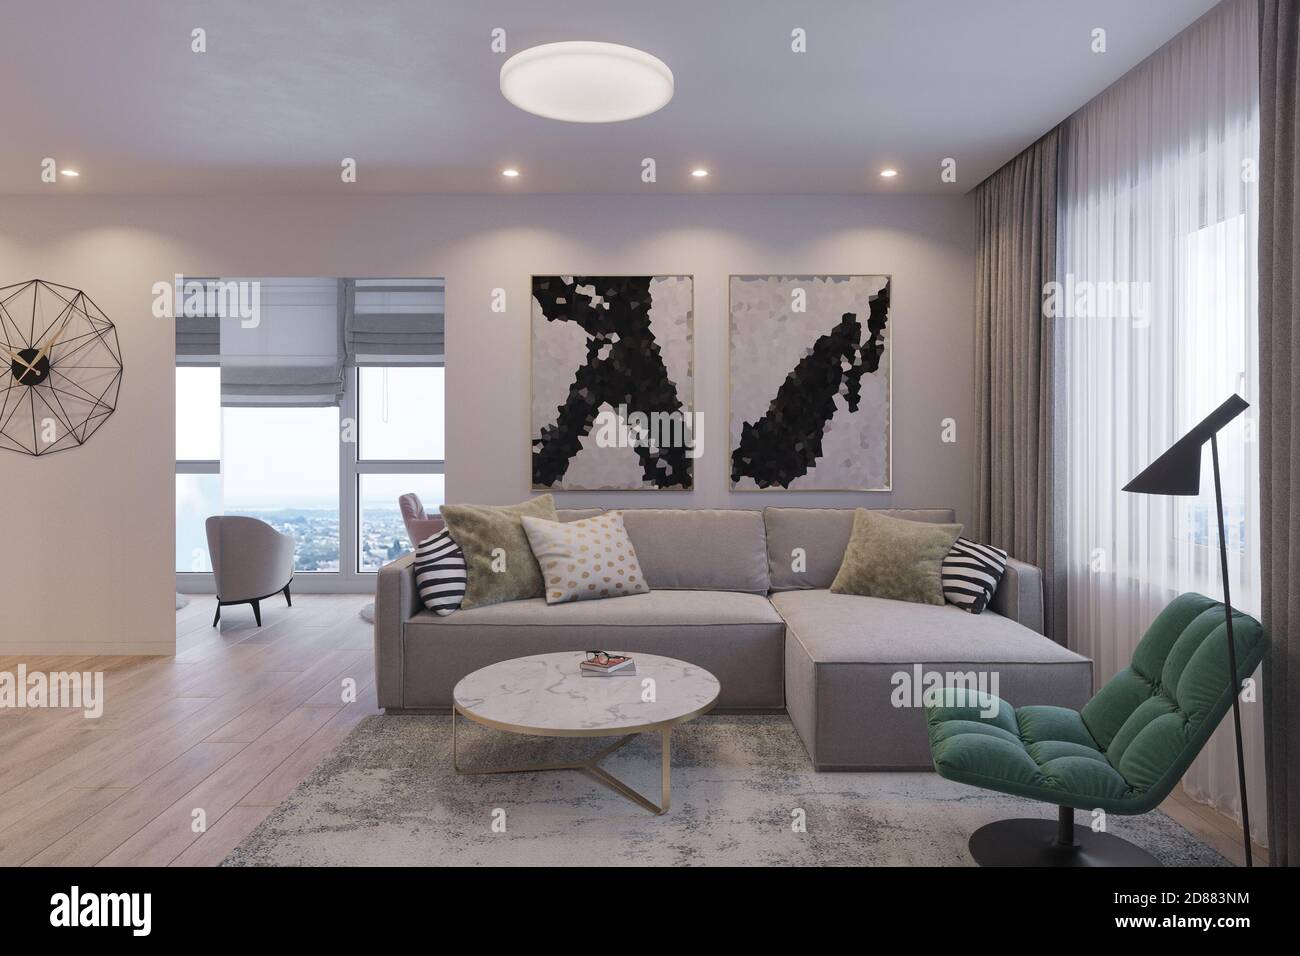 rendu 3d d'un salon moderne avec un canapé d'angle. Décoration intérieure dans le style du minimalisme scandinave Banque D'Images